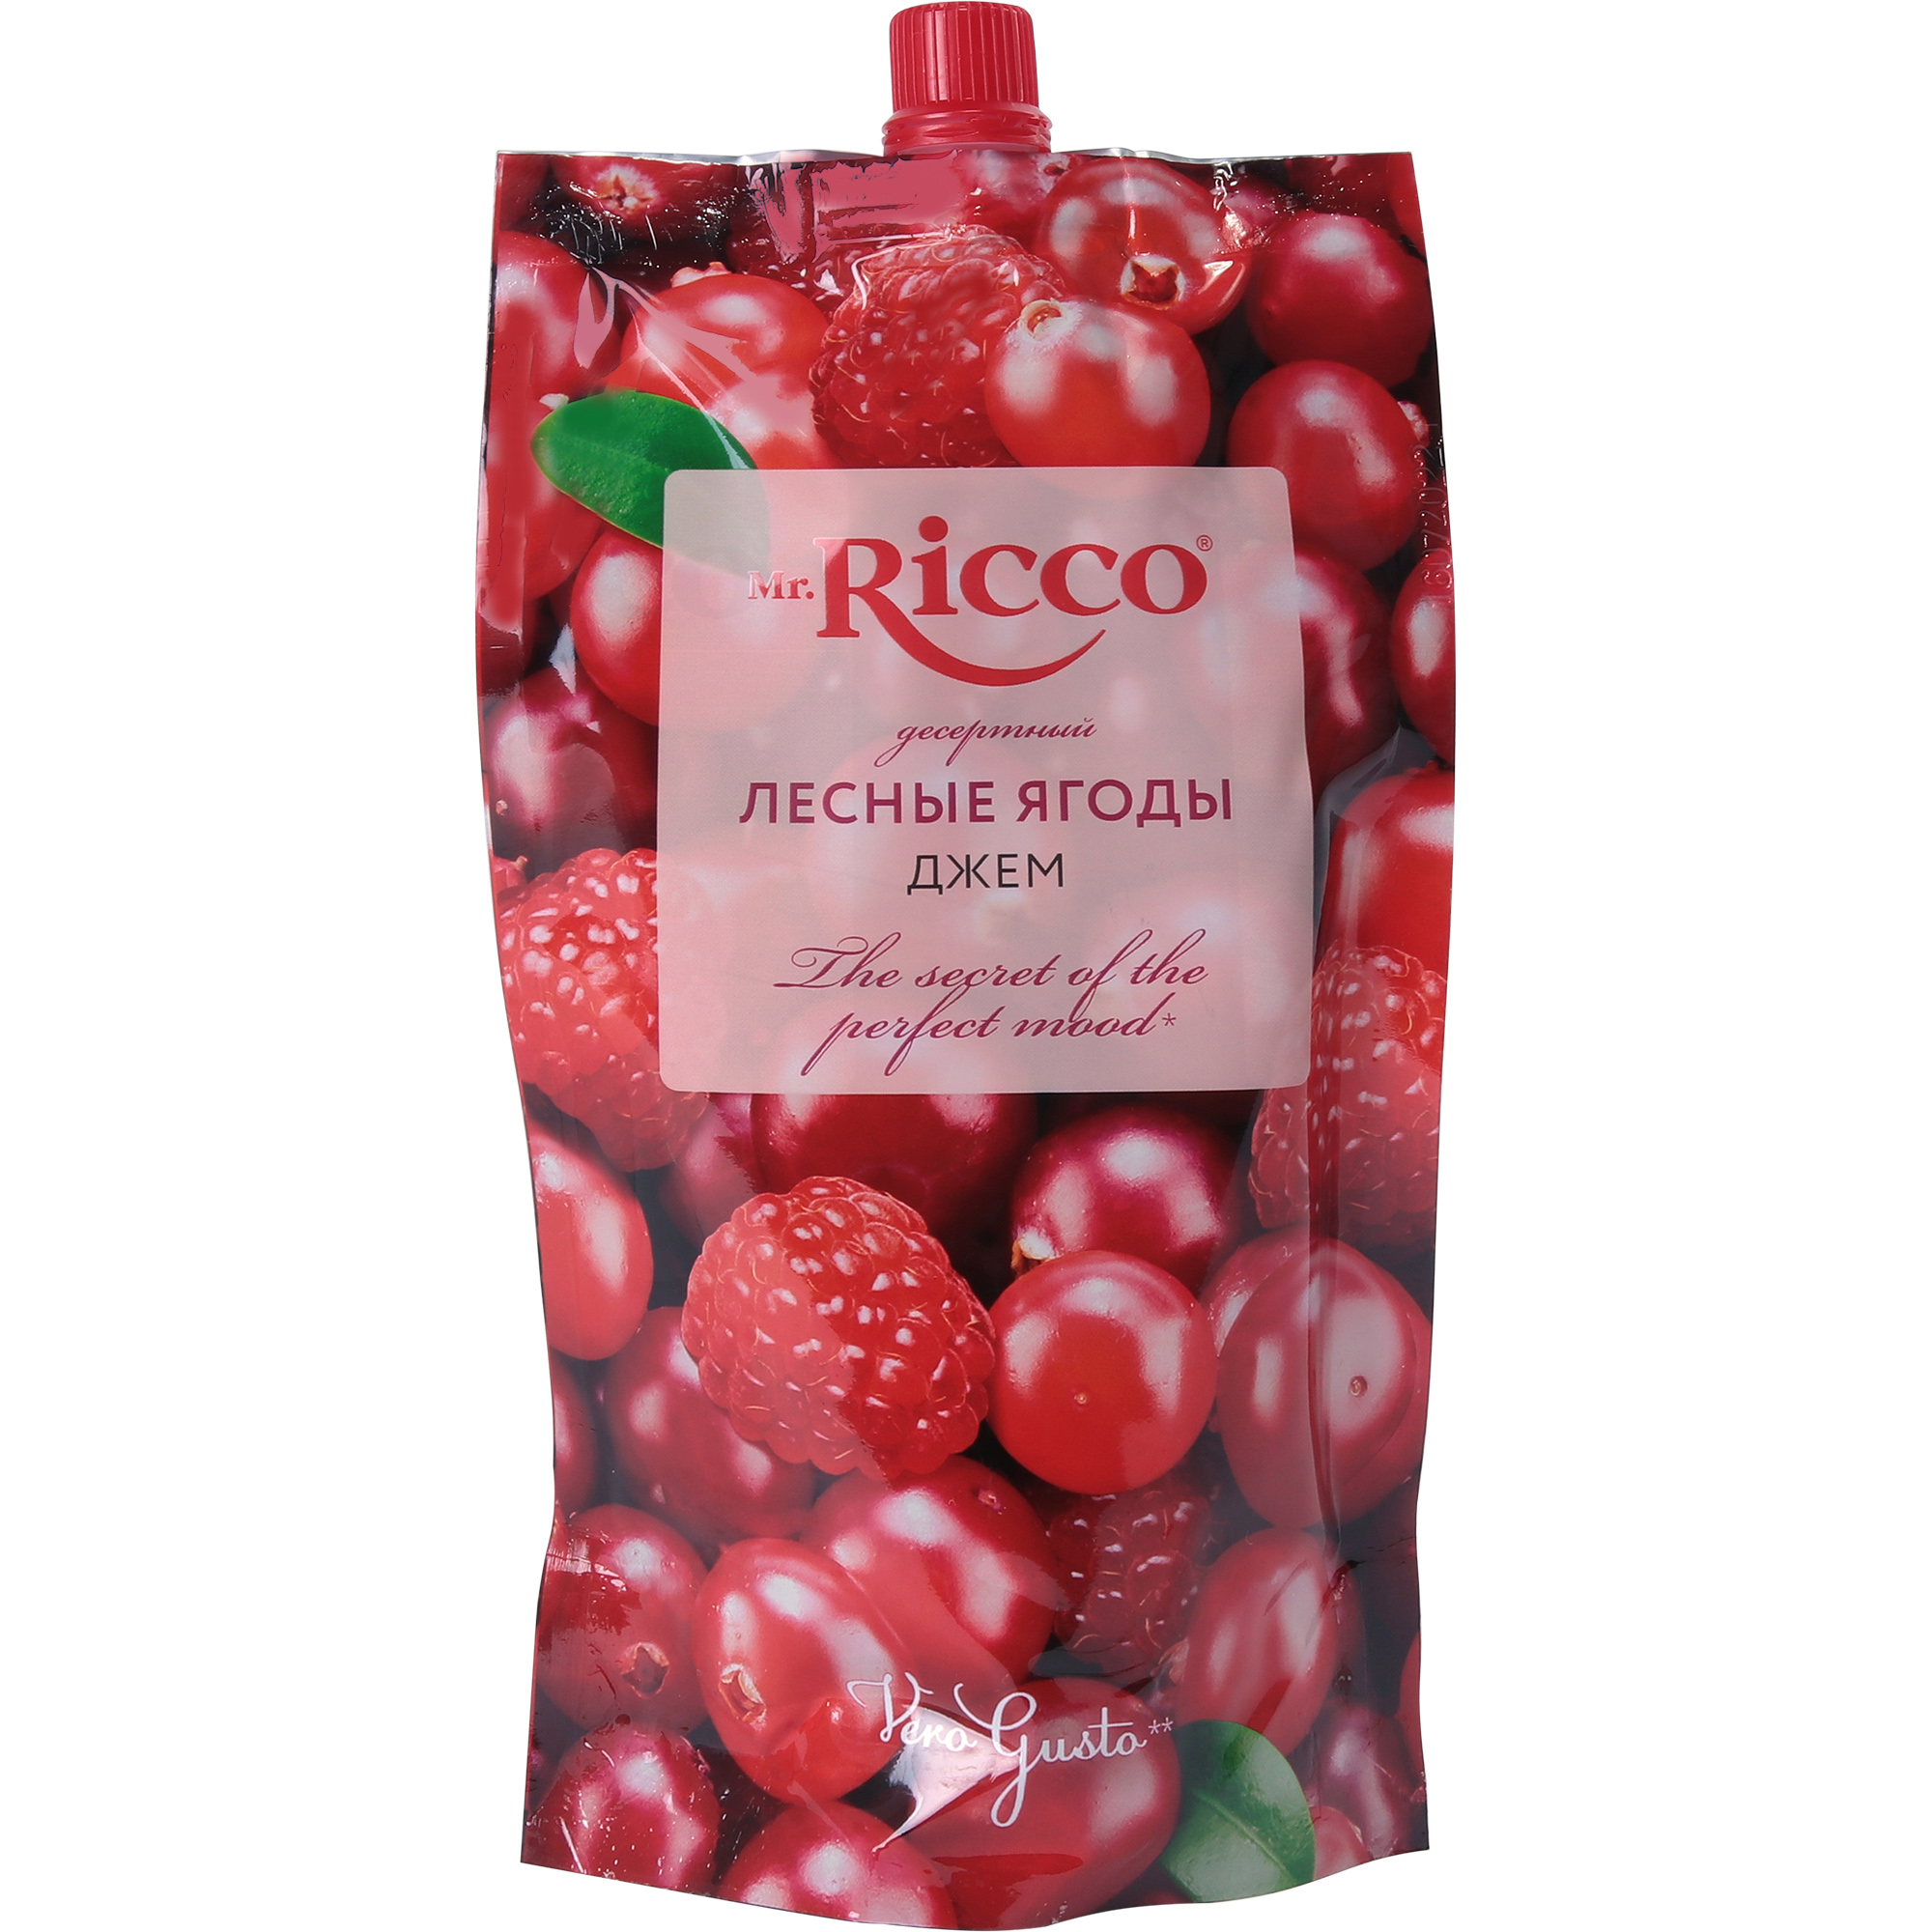 Джем Mr.Ricco лесные ягоды, 300 г джем кинто персик 400 г